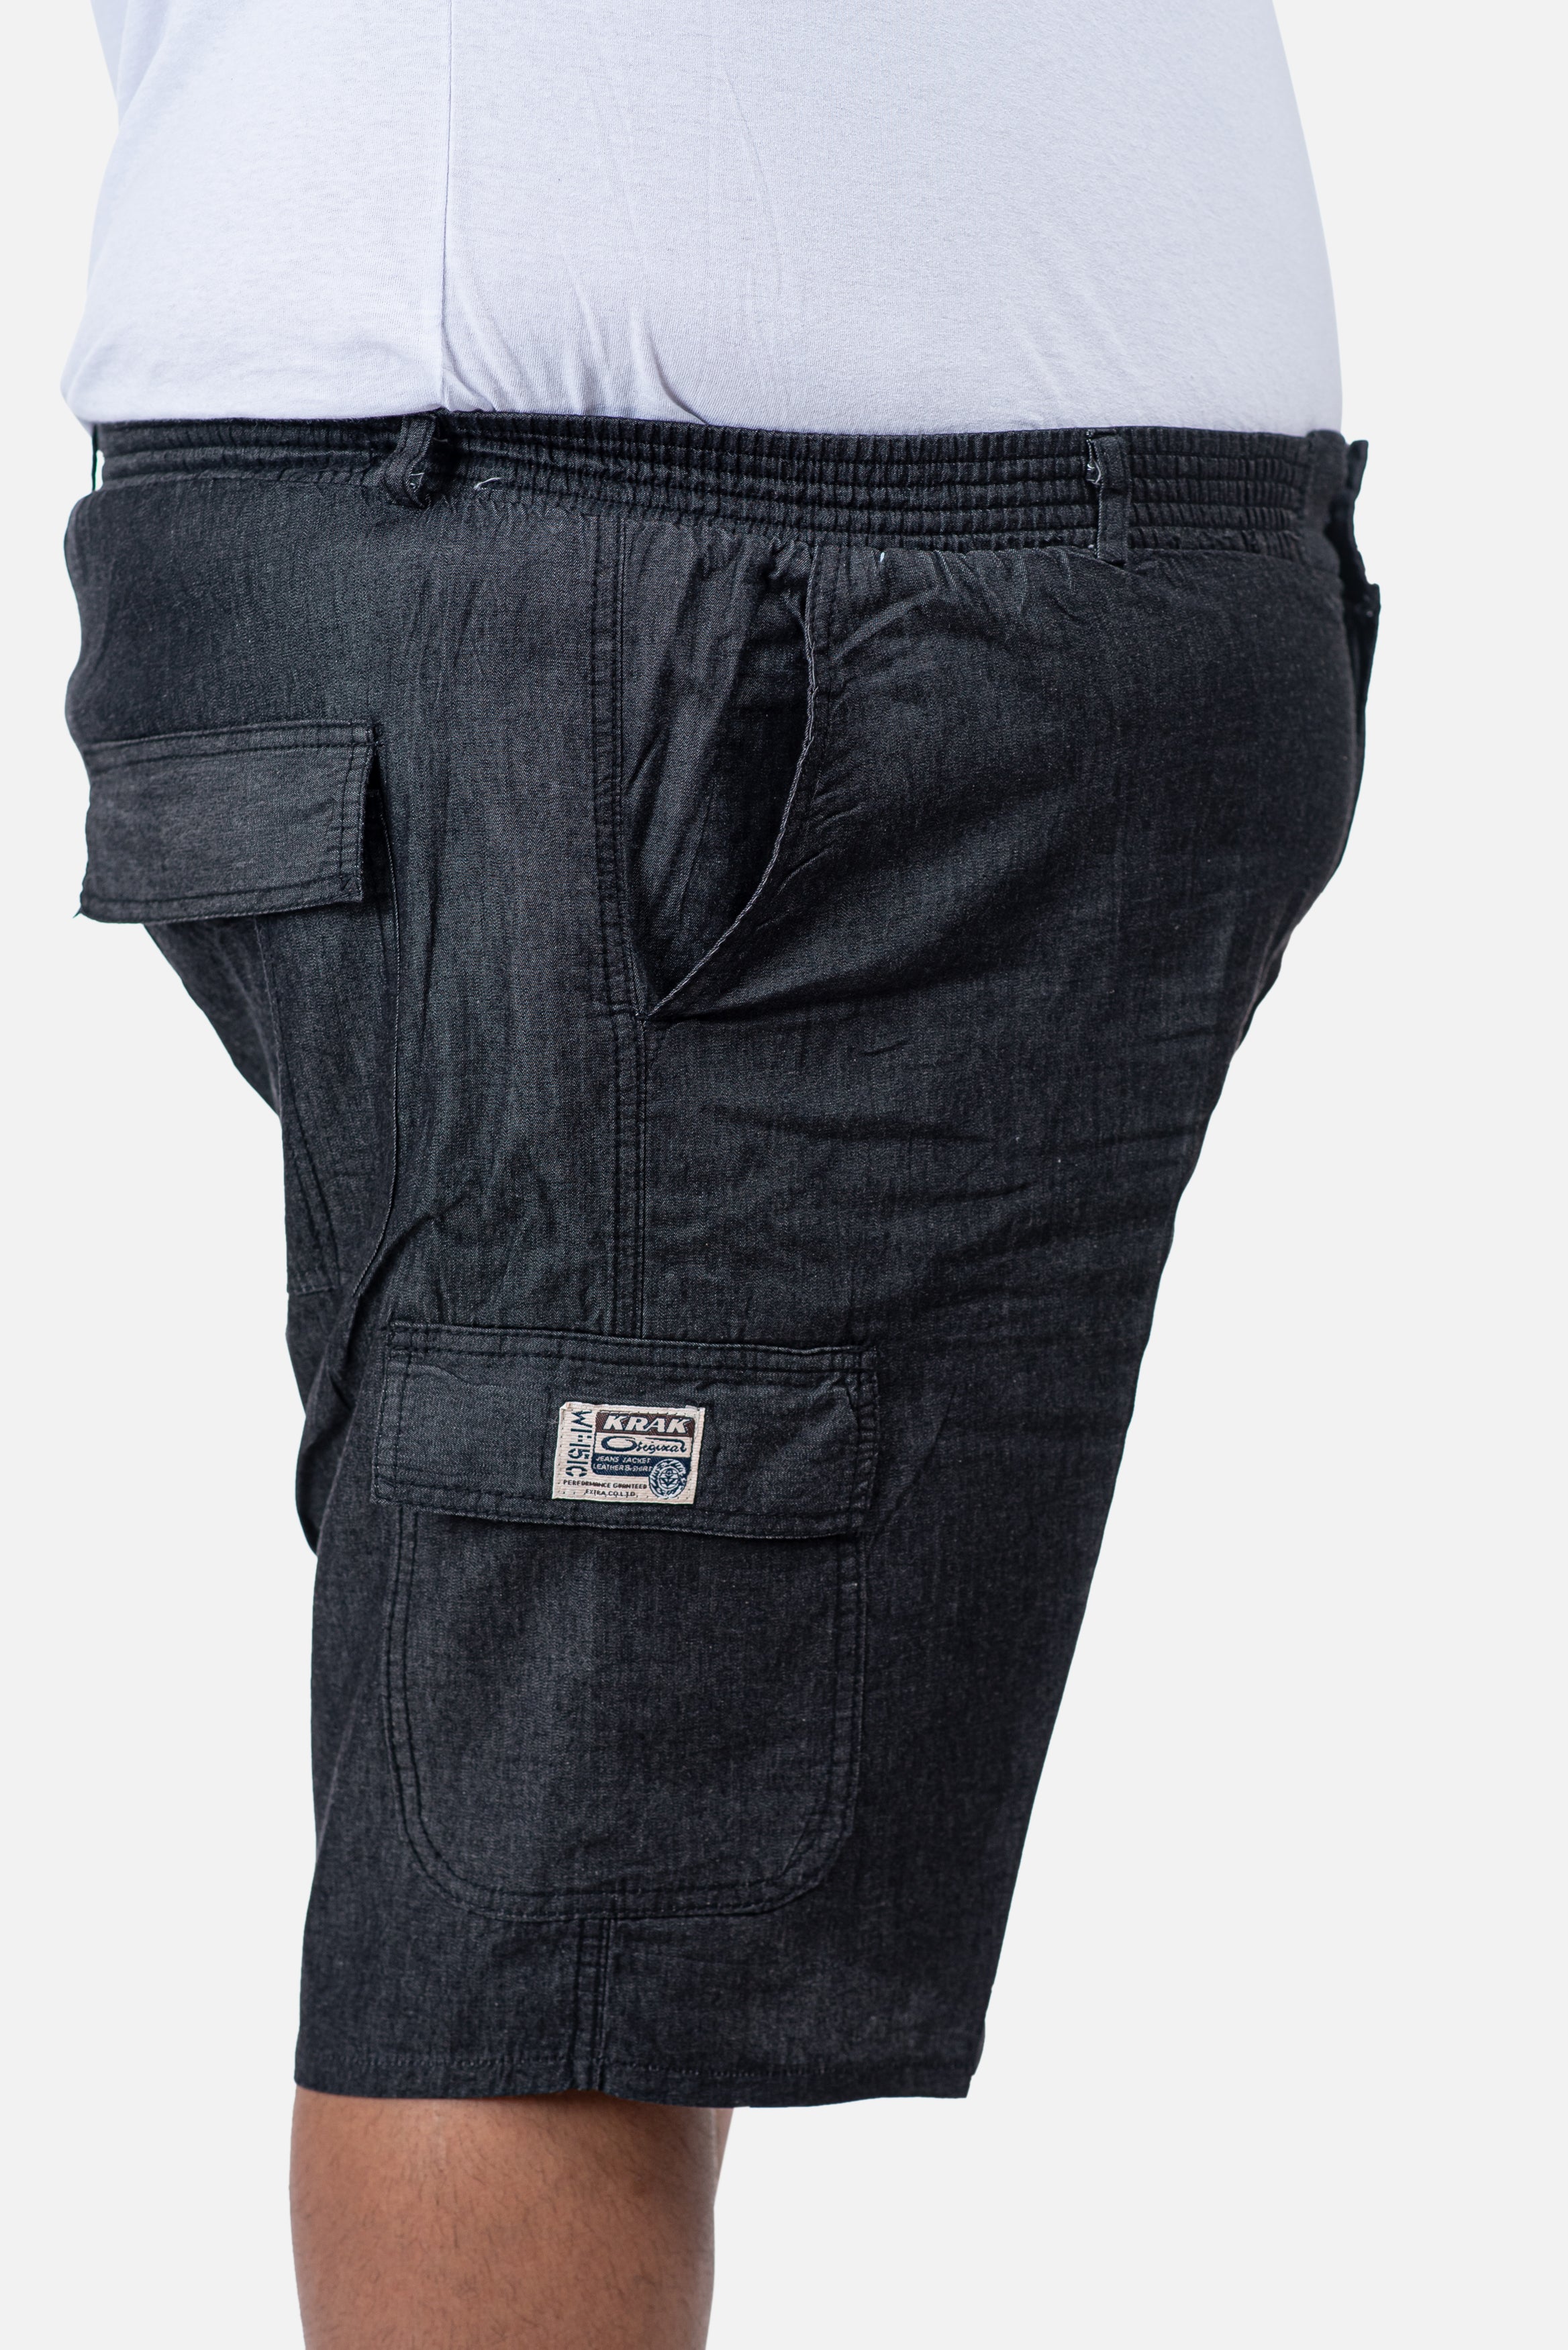 מכנסי דגמ"ח קצרים דקים | ג'ינס